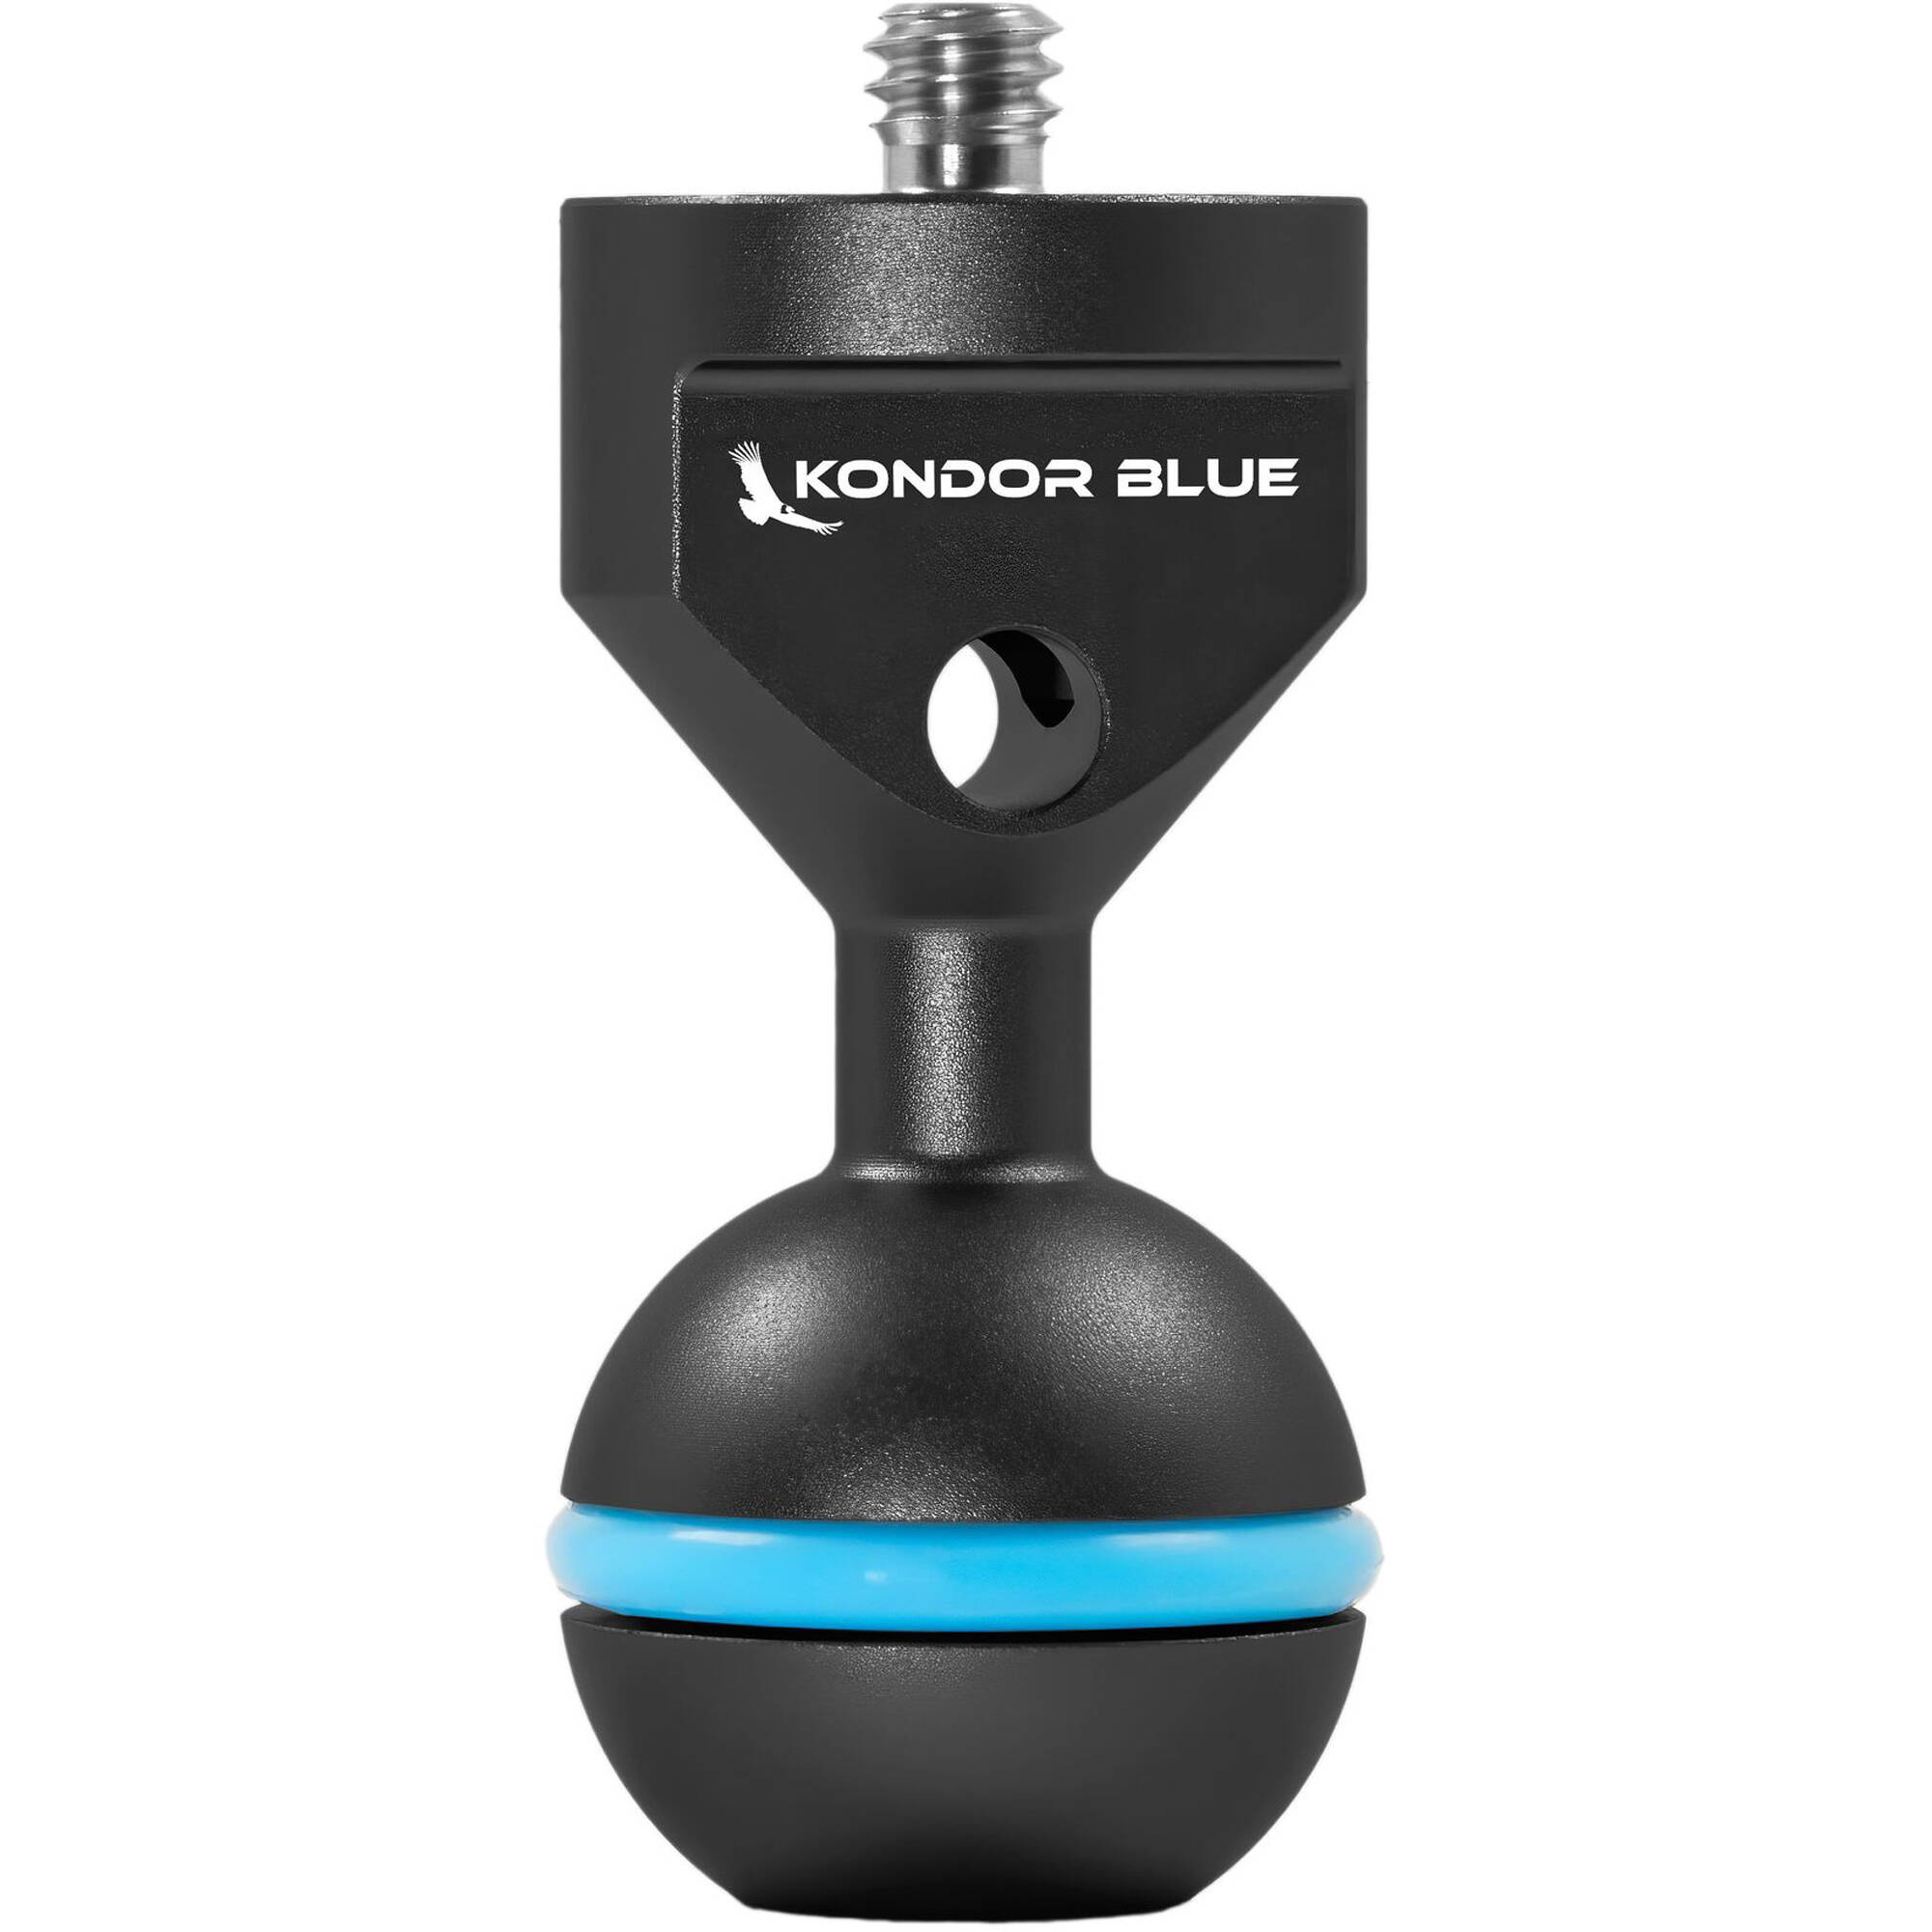 Kondor Blue 1/4"-20 Ball Head for Magic Arms (Black)